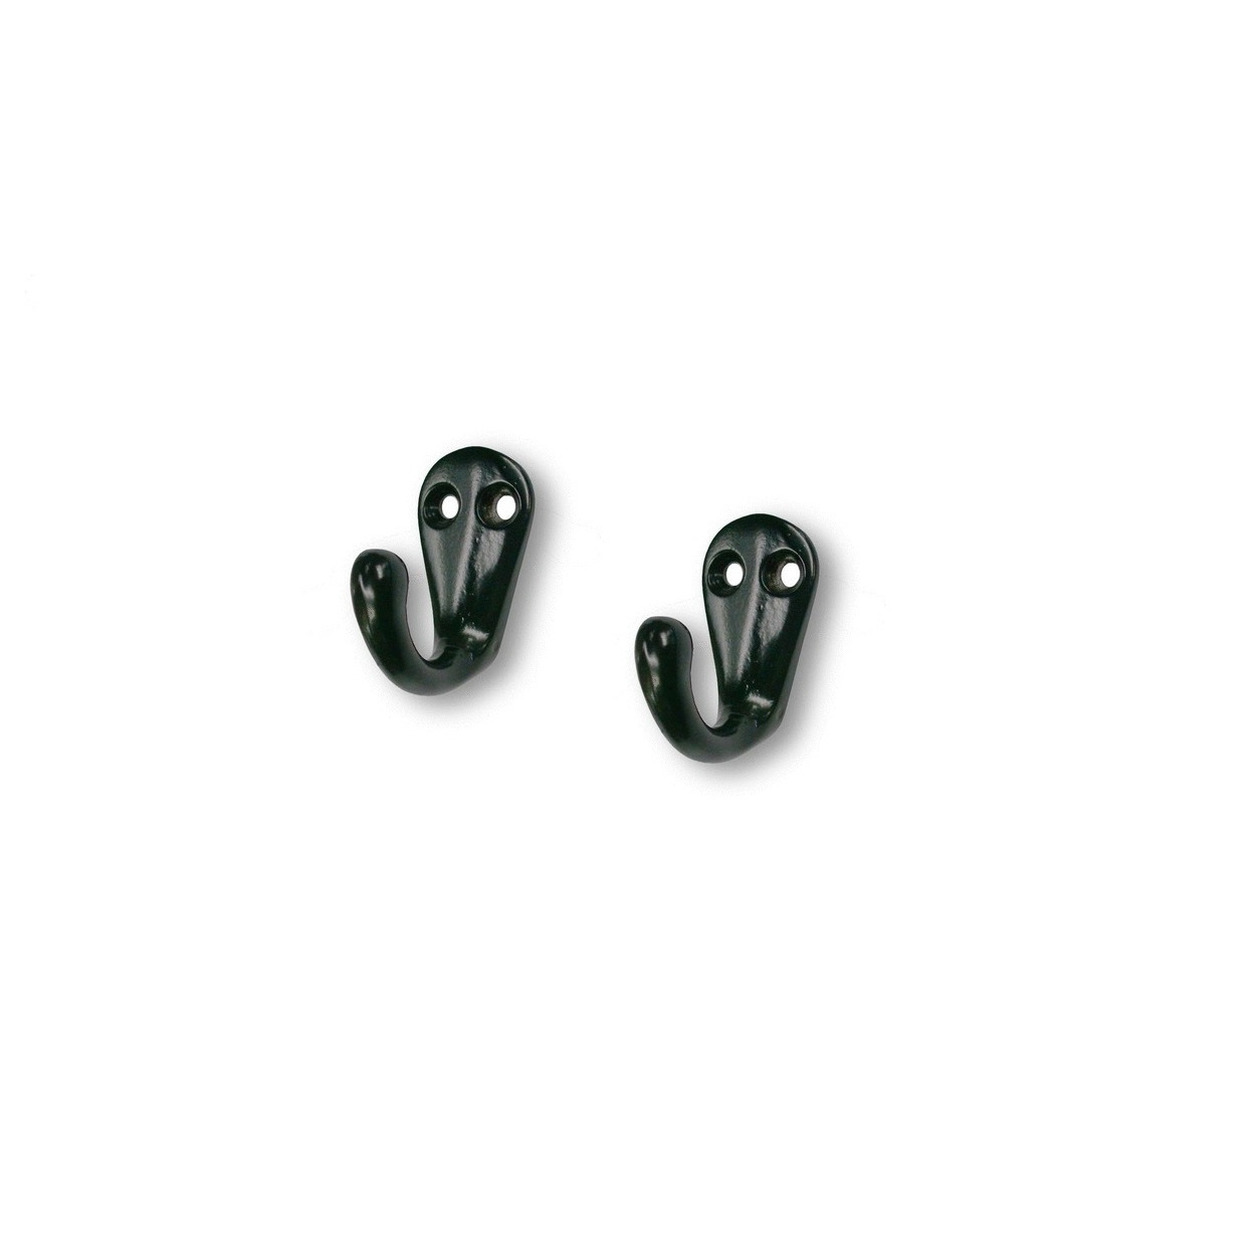 4x Zwarte korte garderobe haakjes-jashaken-kapstokhaakjes metaal 3,3 x 4,1 cm